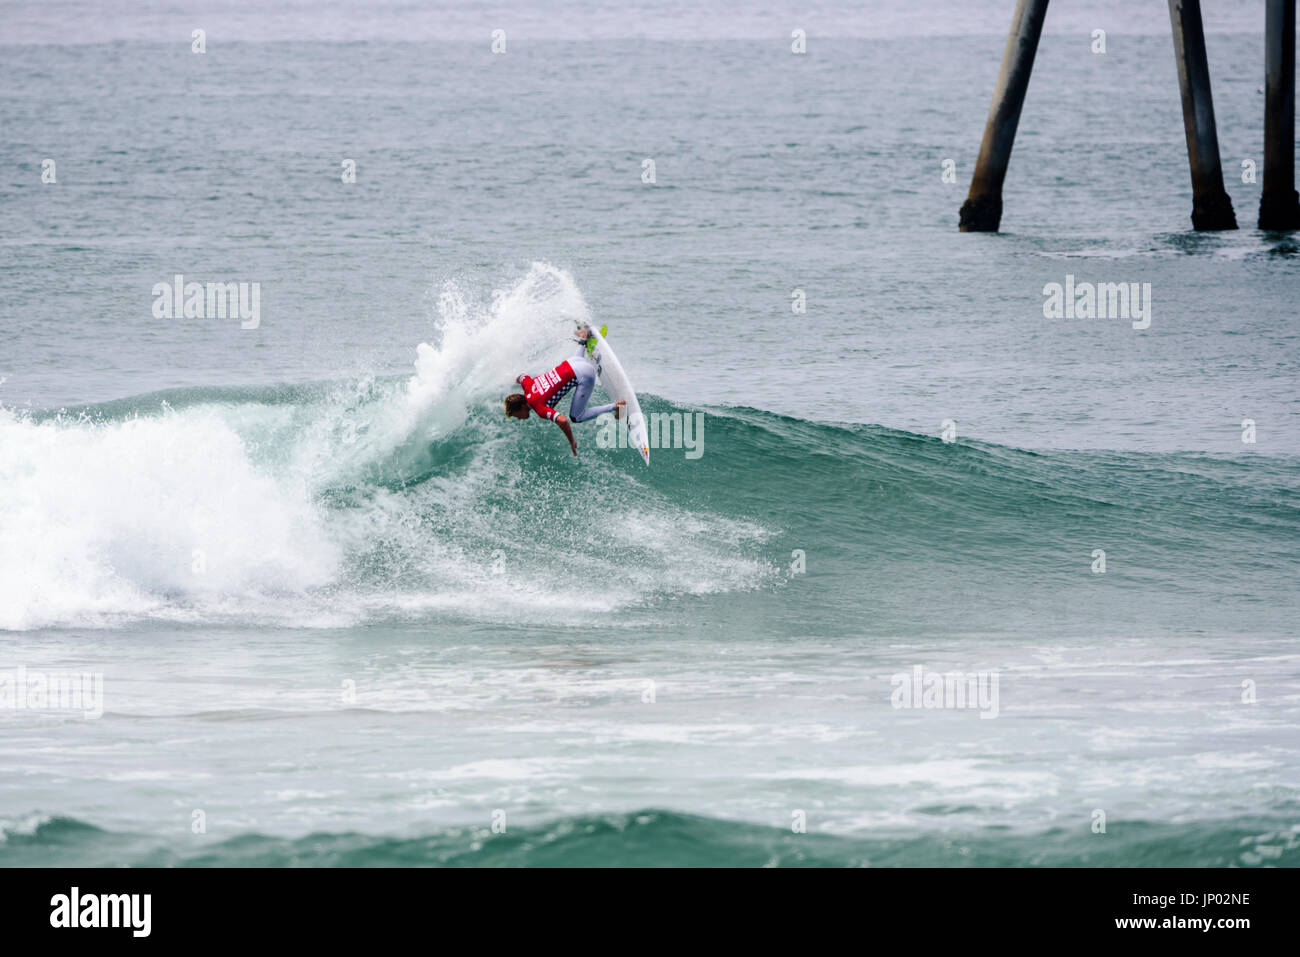 Huntington Beach, FL, USA. 31. Juli 2017. Kolohe Andino (USA) geht fast umgekehrte während Ound 2 des Wettbewerbs auf den 2017 VANS uns Open of Surfing. Bildnachweis: Benjamin Ginsberg/Alamy Live-Nachrichten. Stockfoto